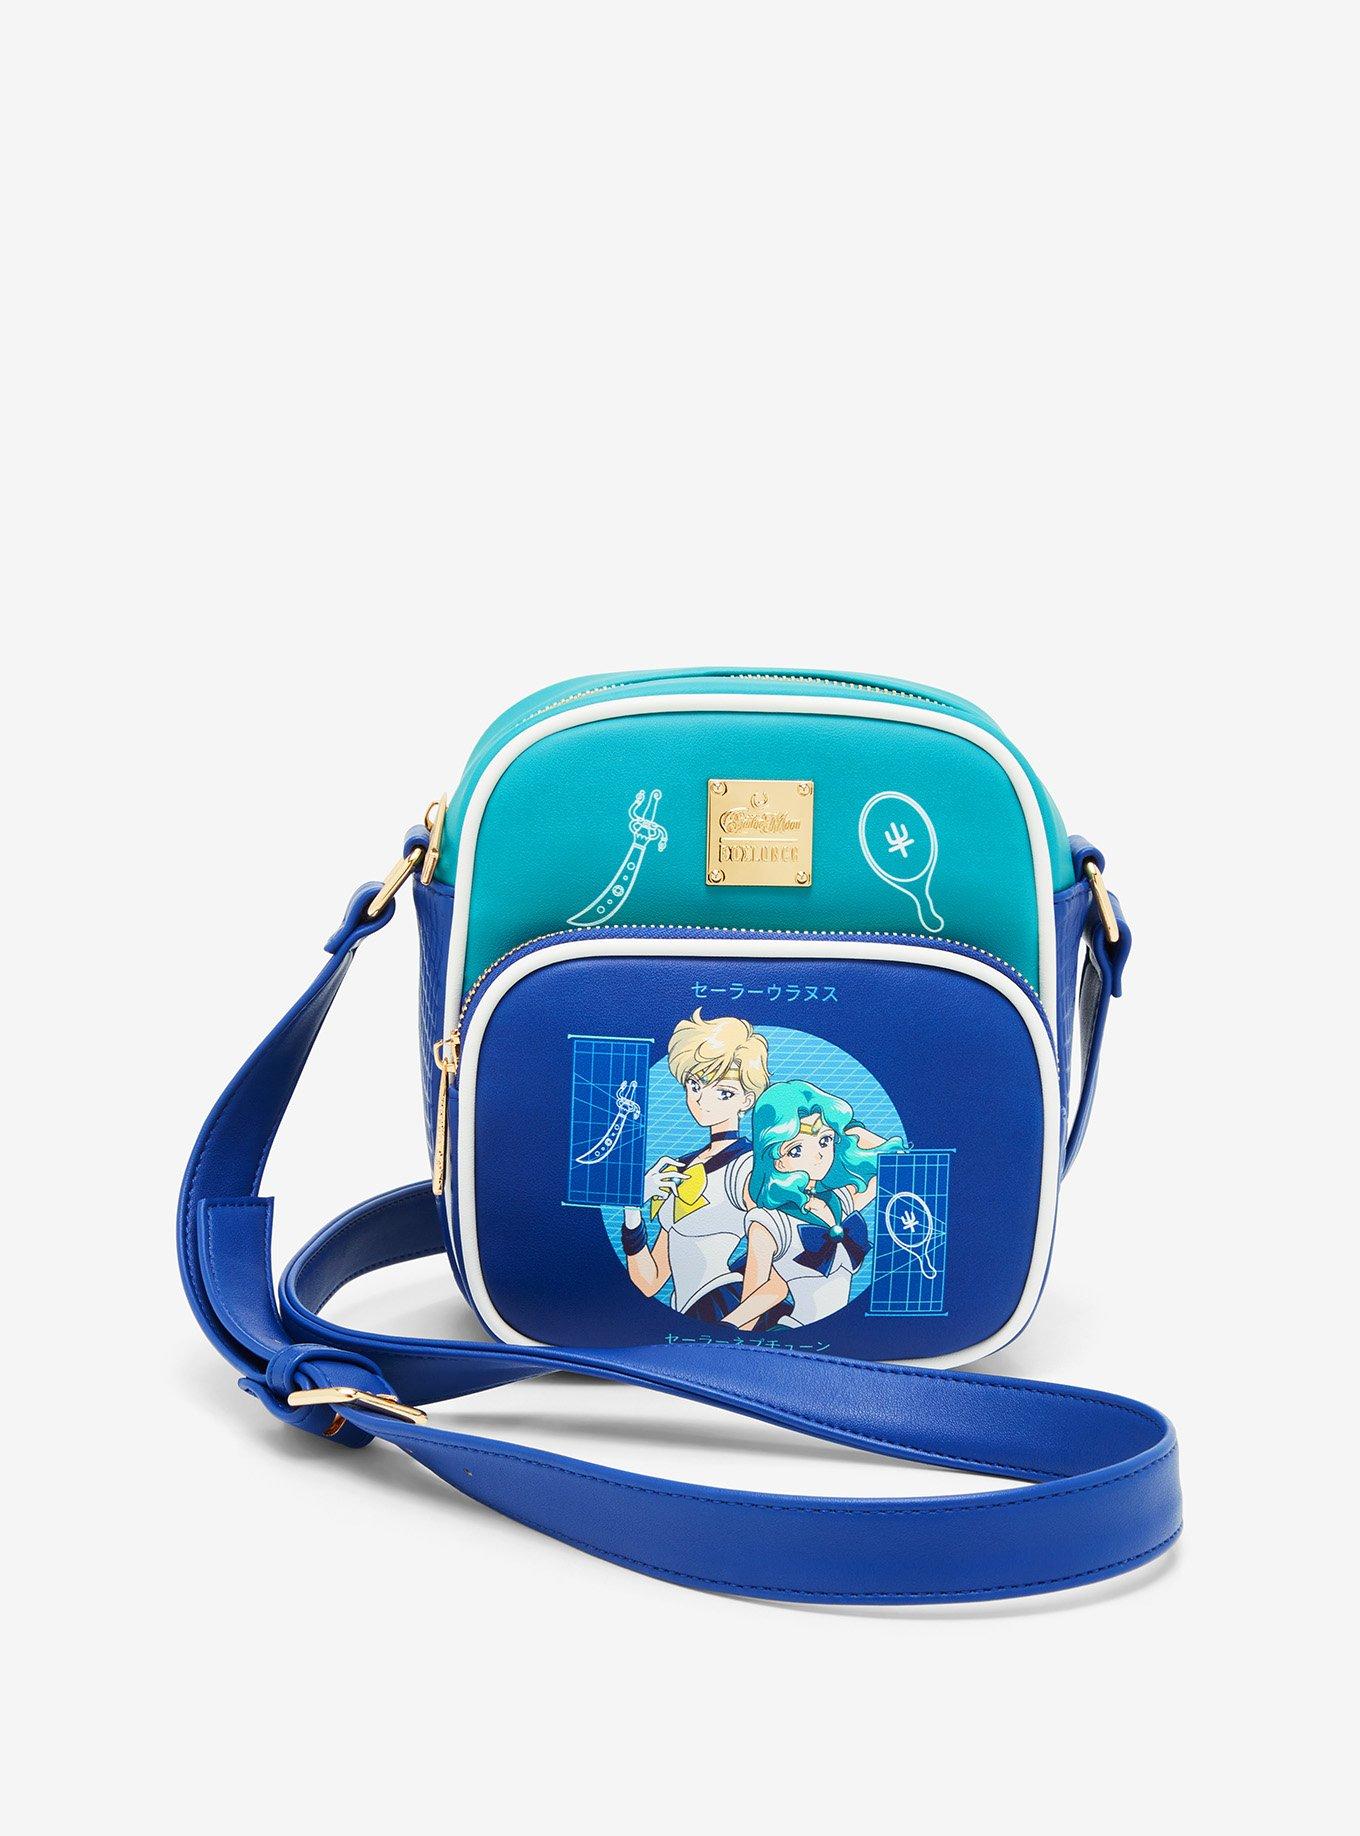 Sailor Moon Neoprene Lunch Bag, Lunch Box - Inspire Uplift